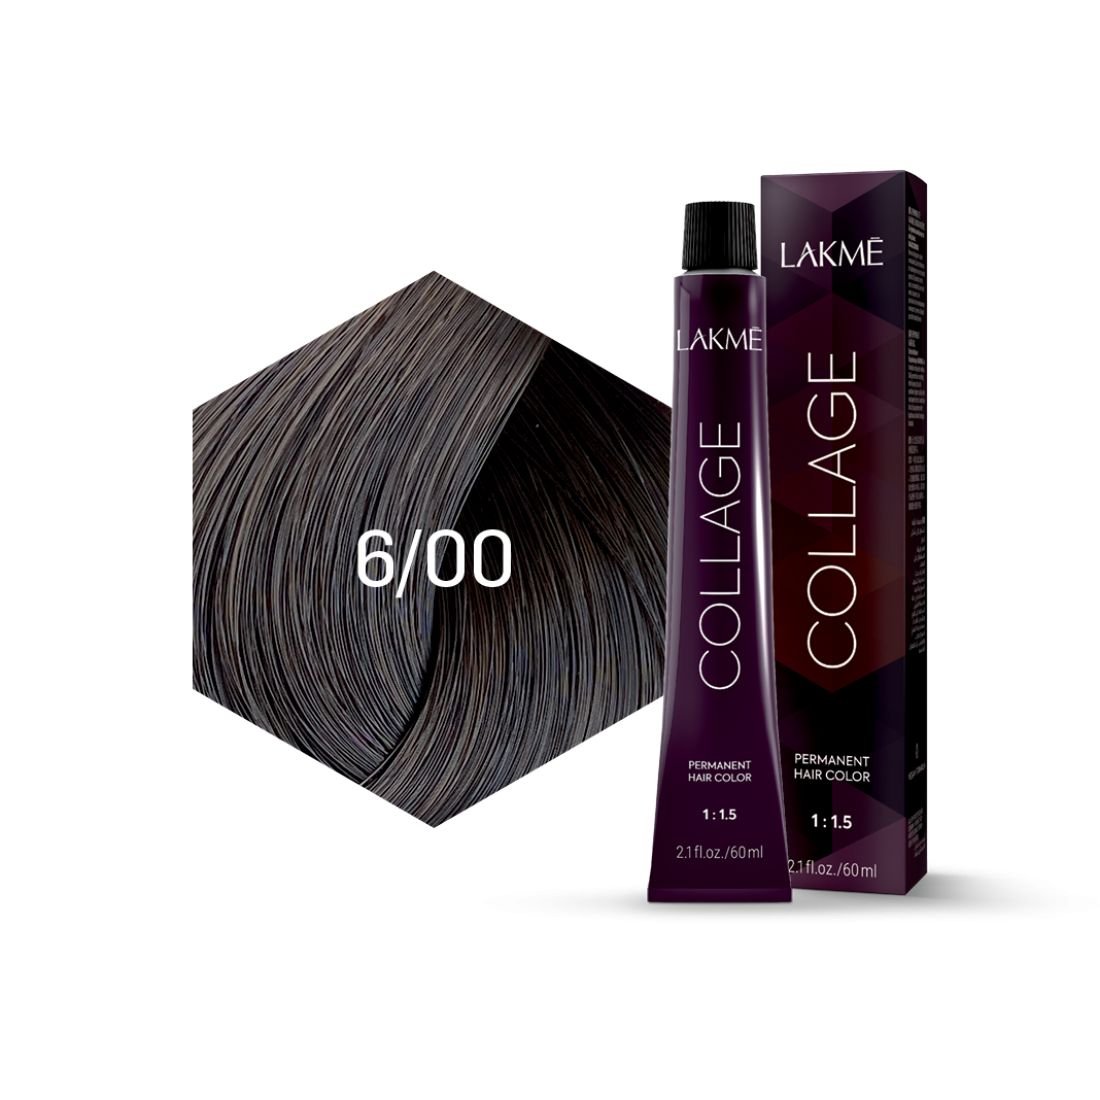 Крем-фарба для волосся Lakme Collage відтінок 6/00 (Темно-русявий), 60 мл - фото 2